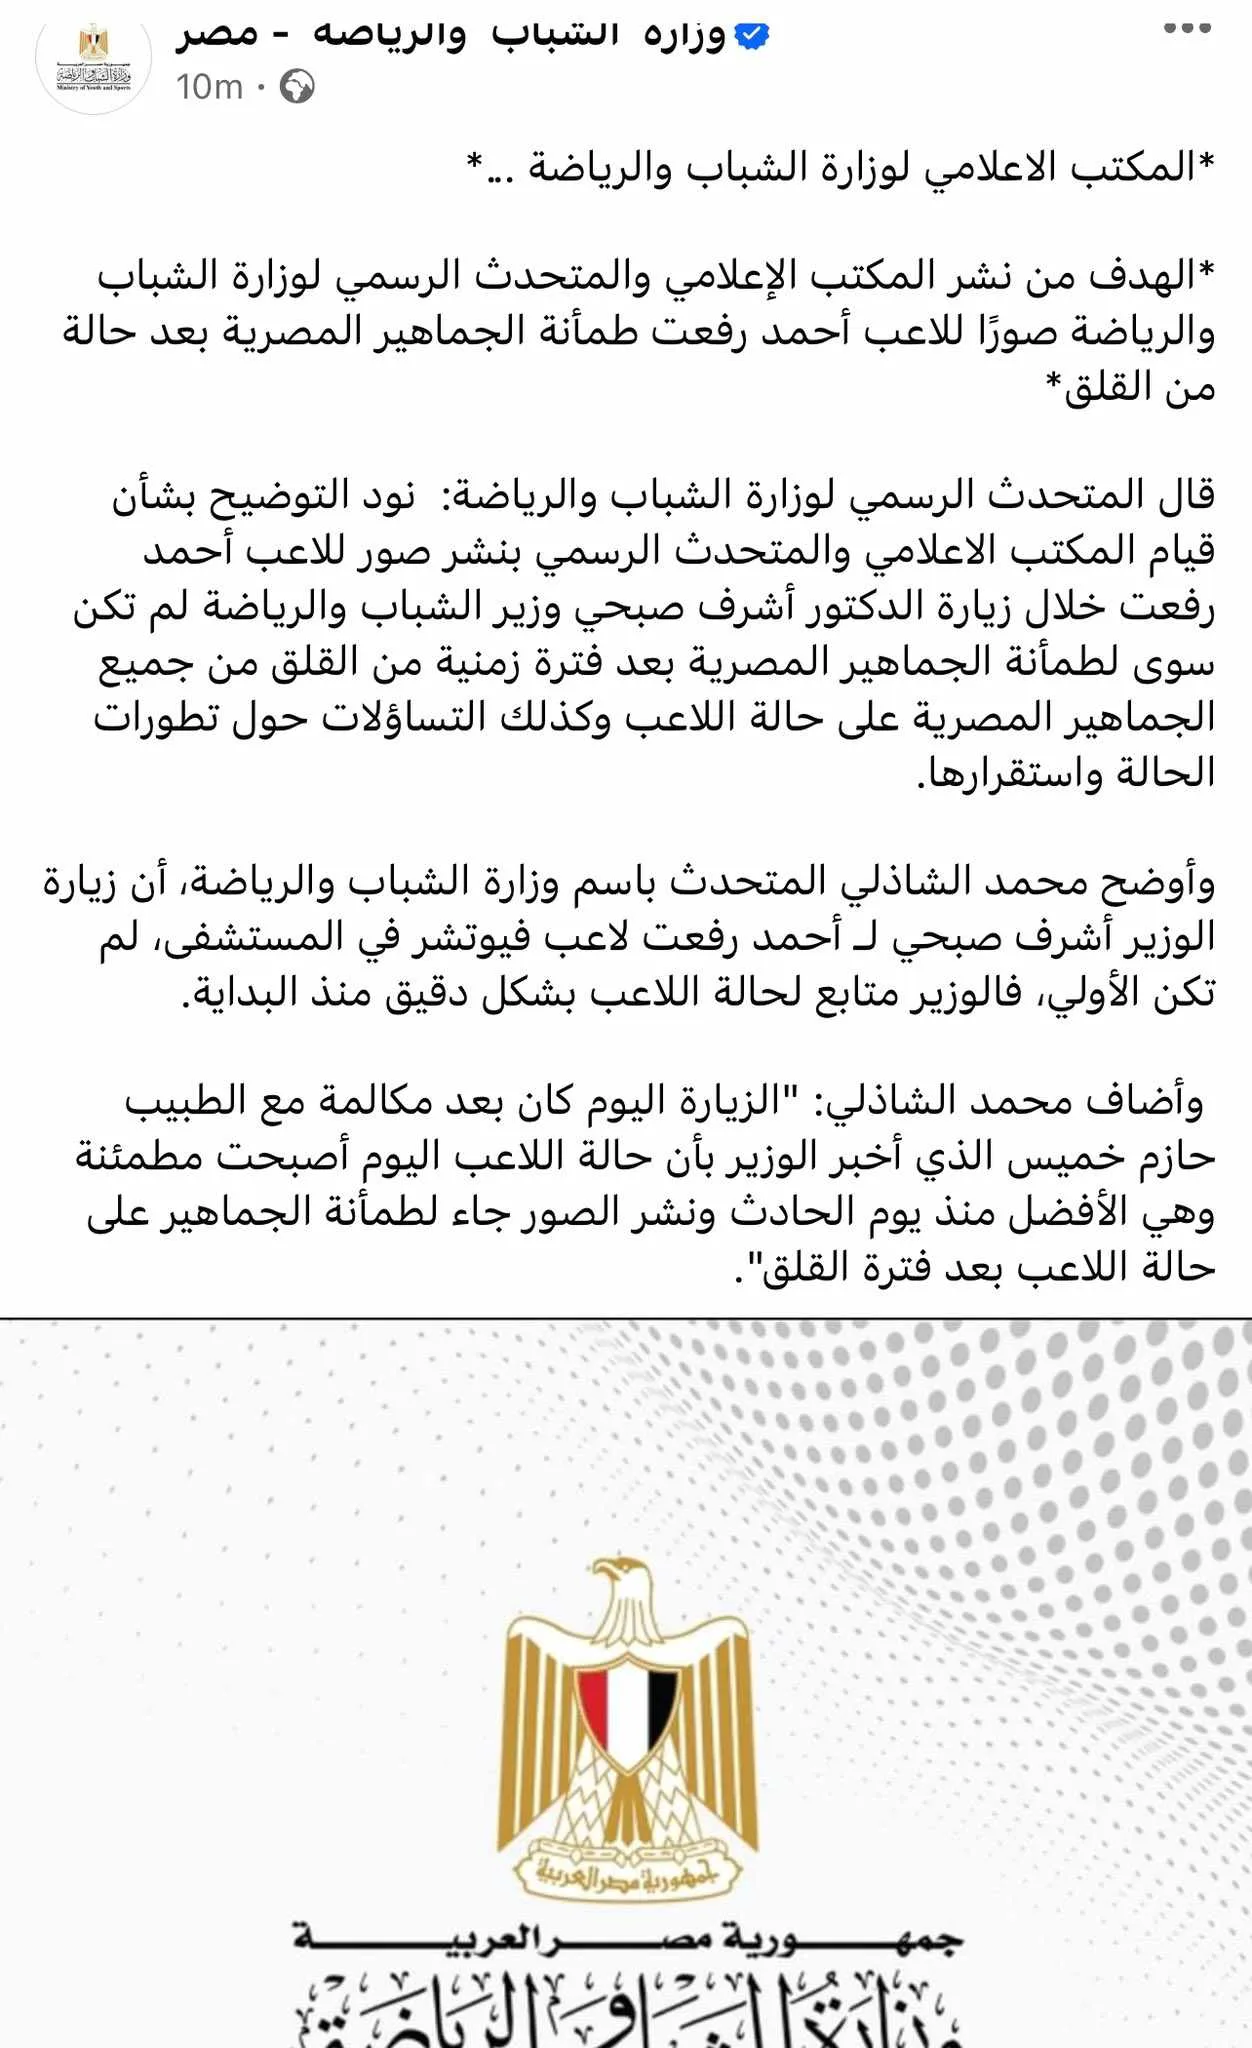 بيان رسمي من وزارة الرياضة بعد الهجوم عليها بسبب صورة أحمد رفعت